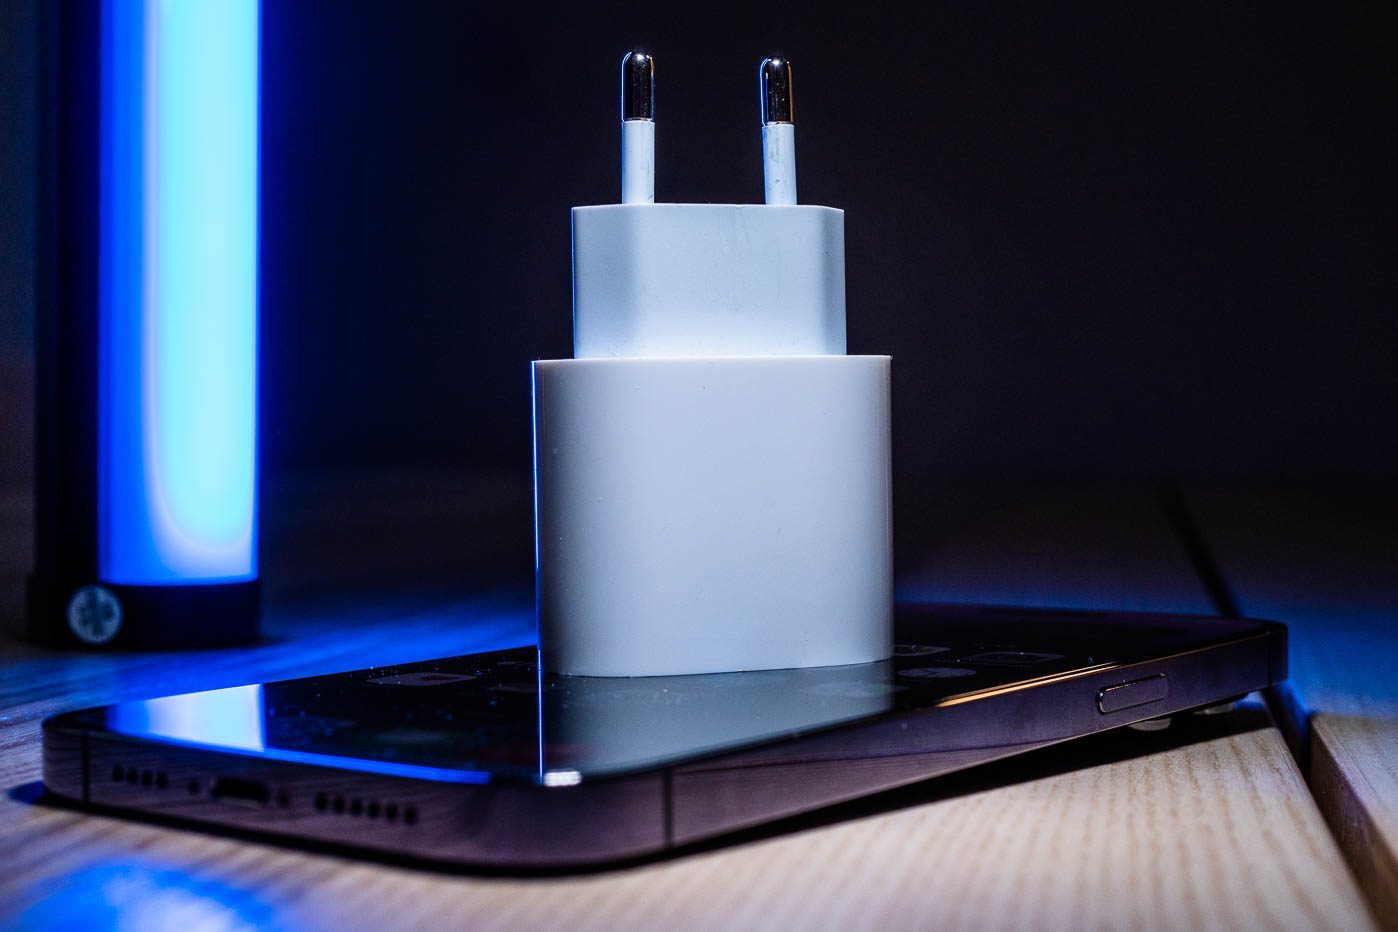 L'iPhone 14 Pro bénéficie de la recharge rapide selon Apple, mais n'est plus livré avec un chargeur.